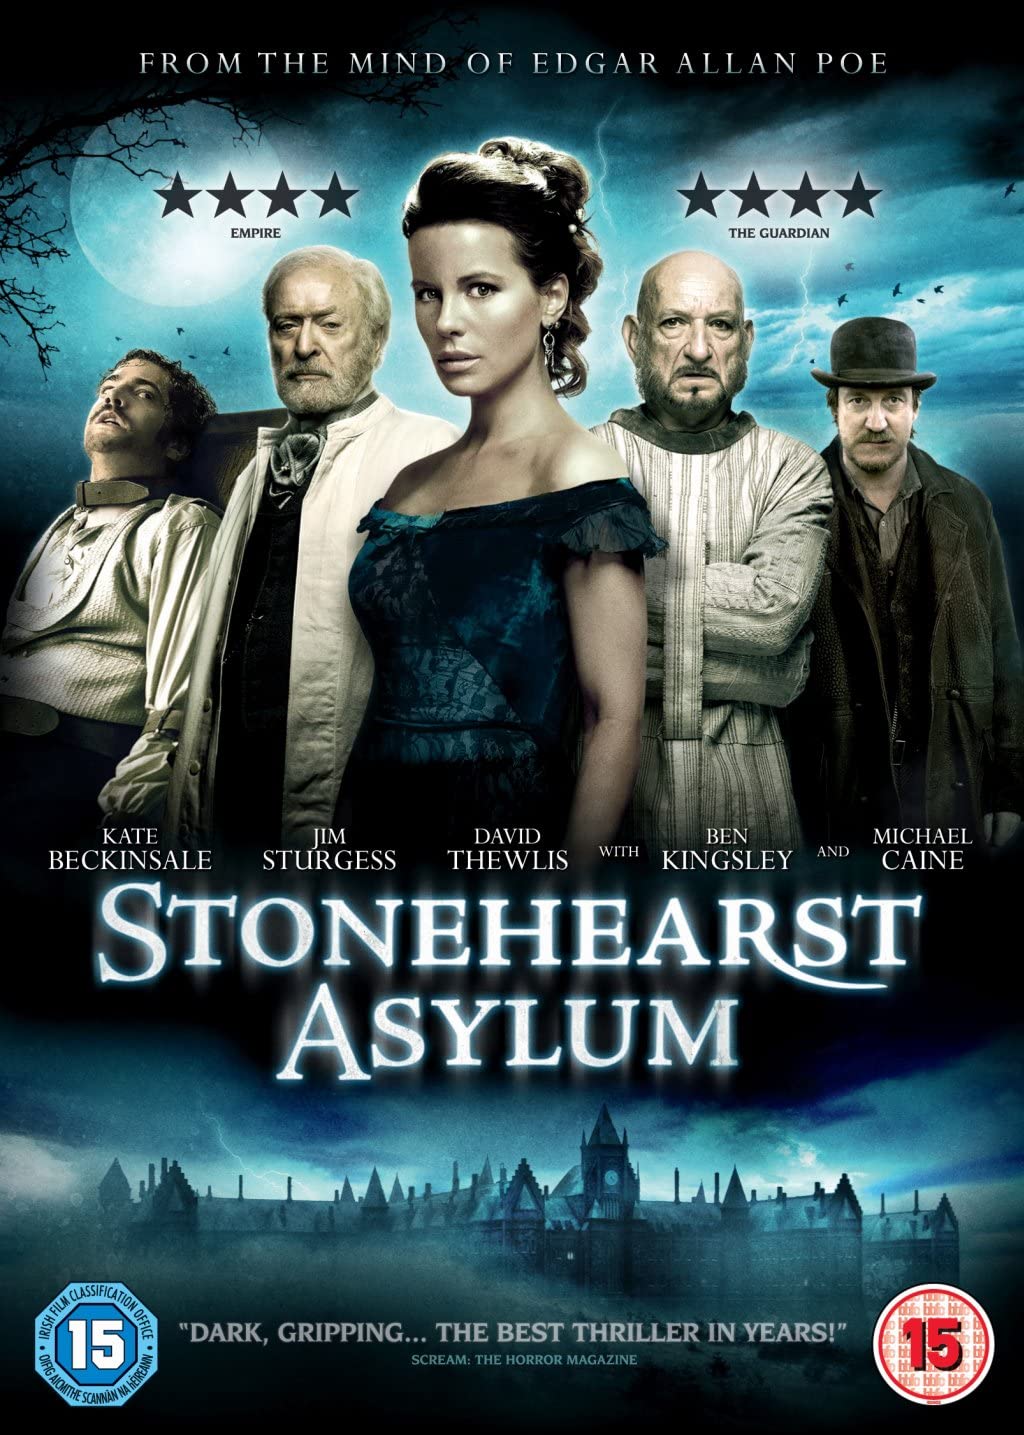 Stonehearst Asylum [2015] - Thriller/Horror [DVD]